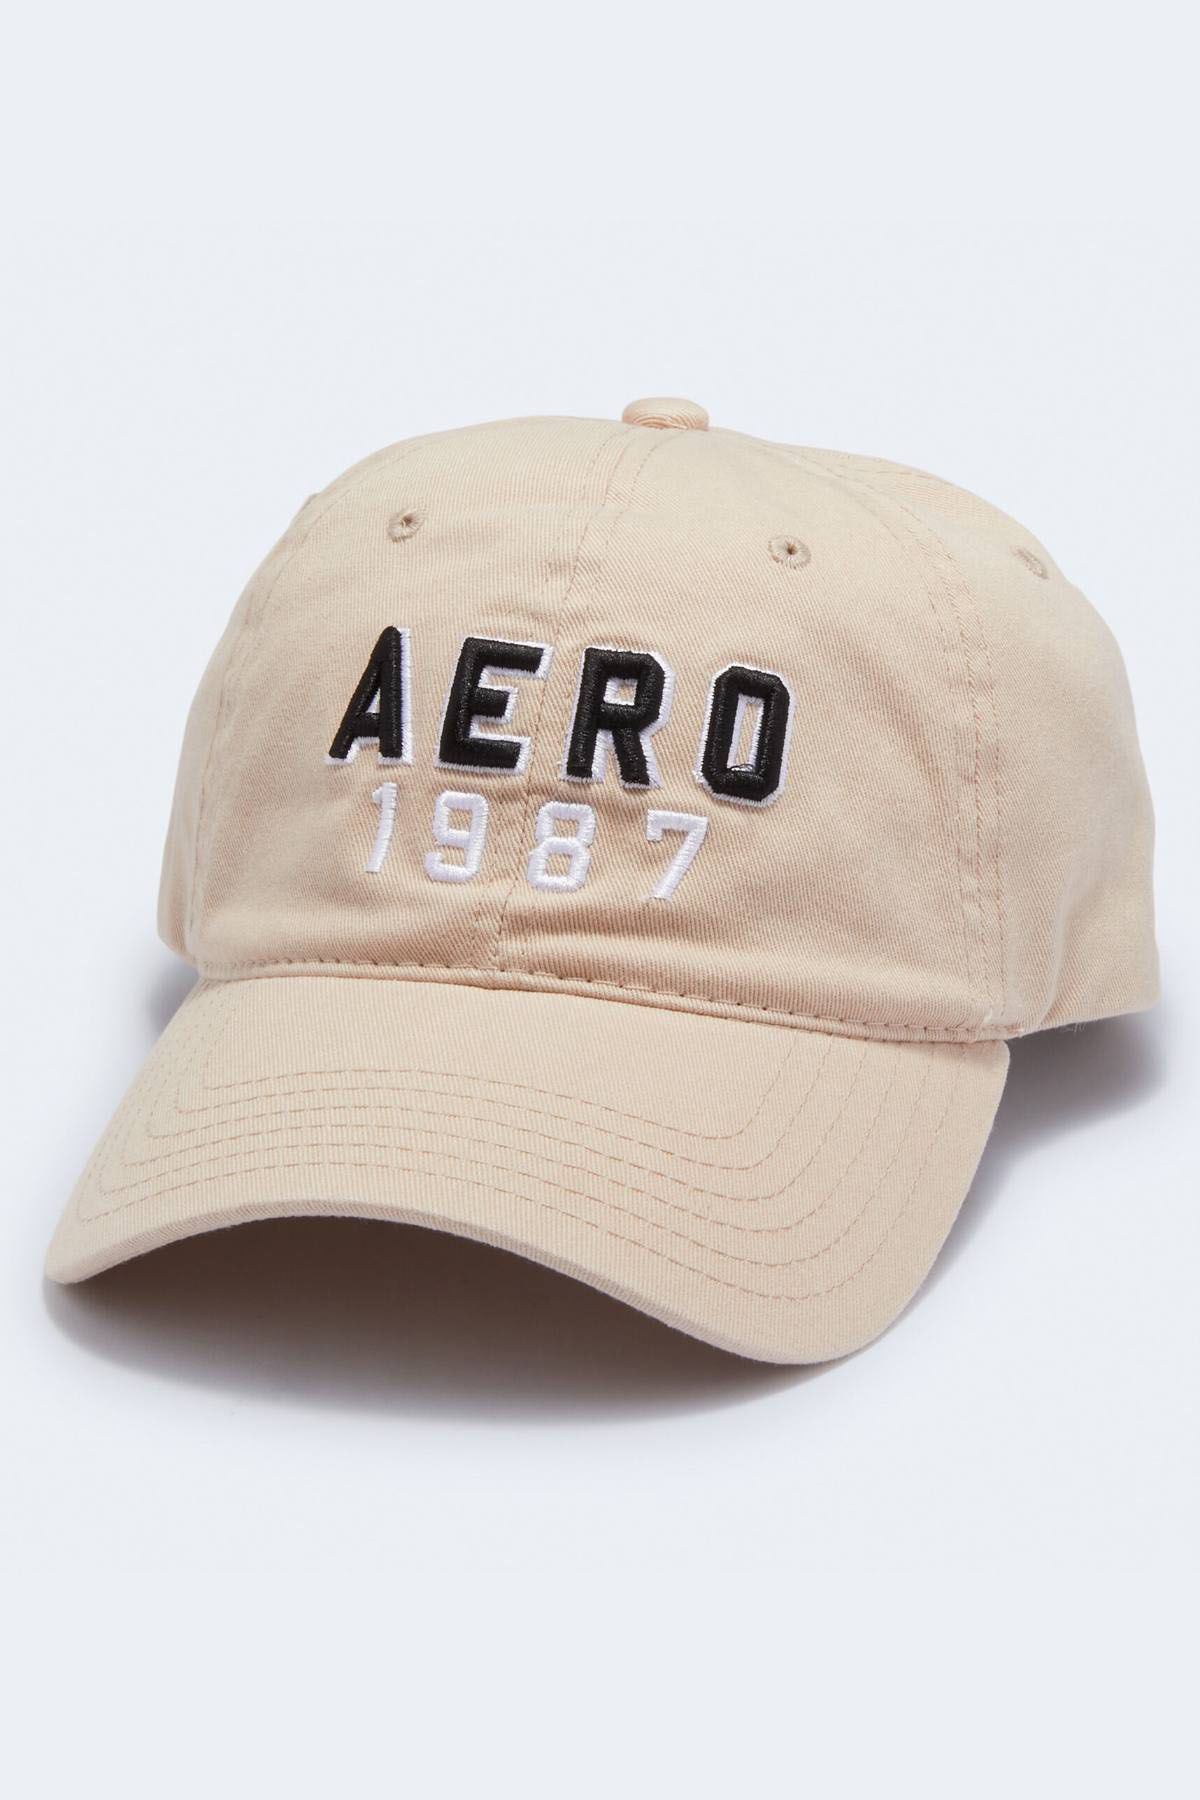 Aero 1987 Adjustable Dad Hat